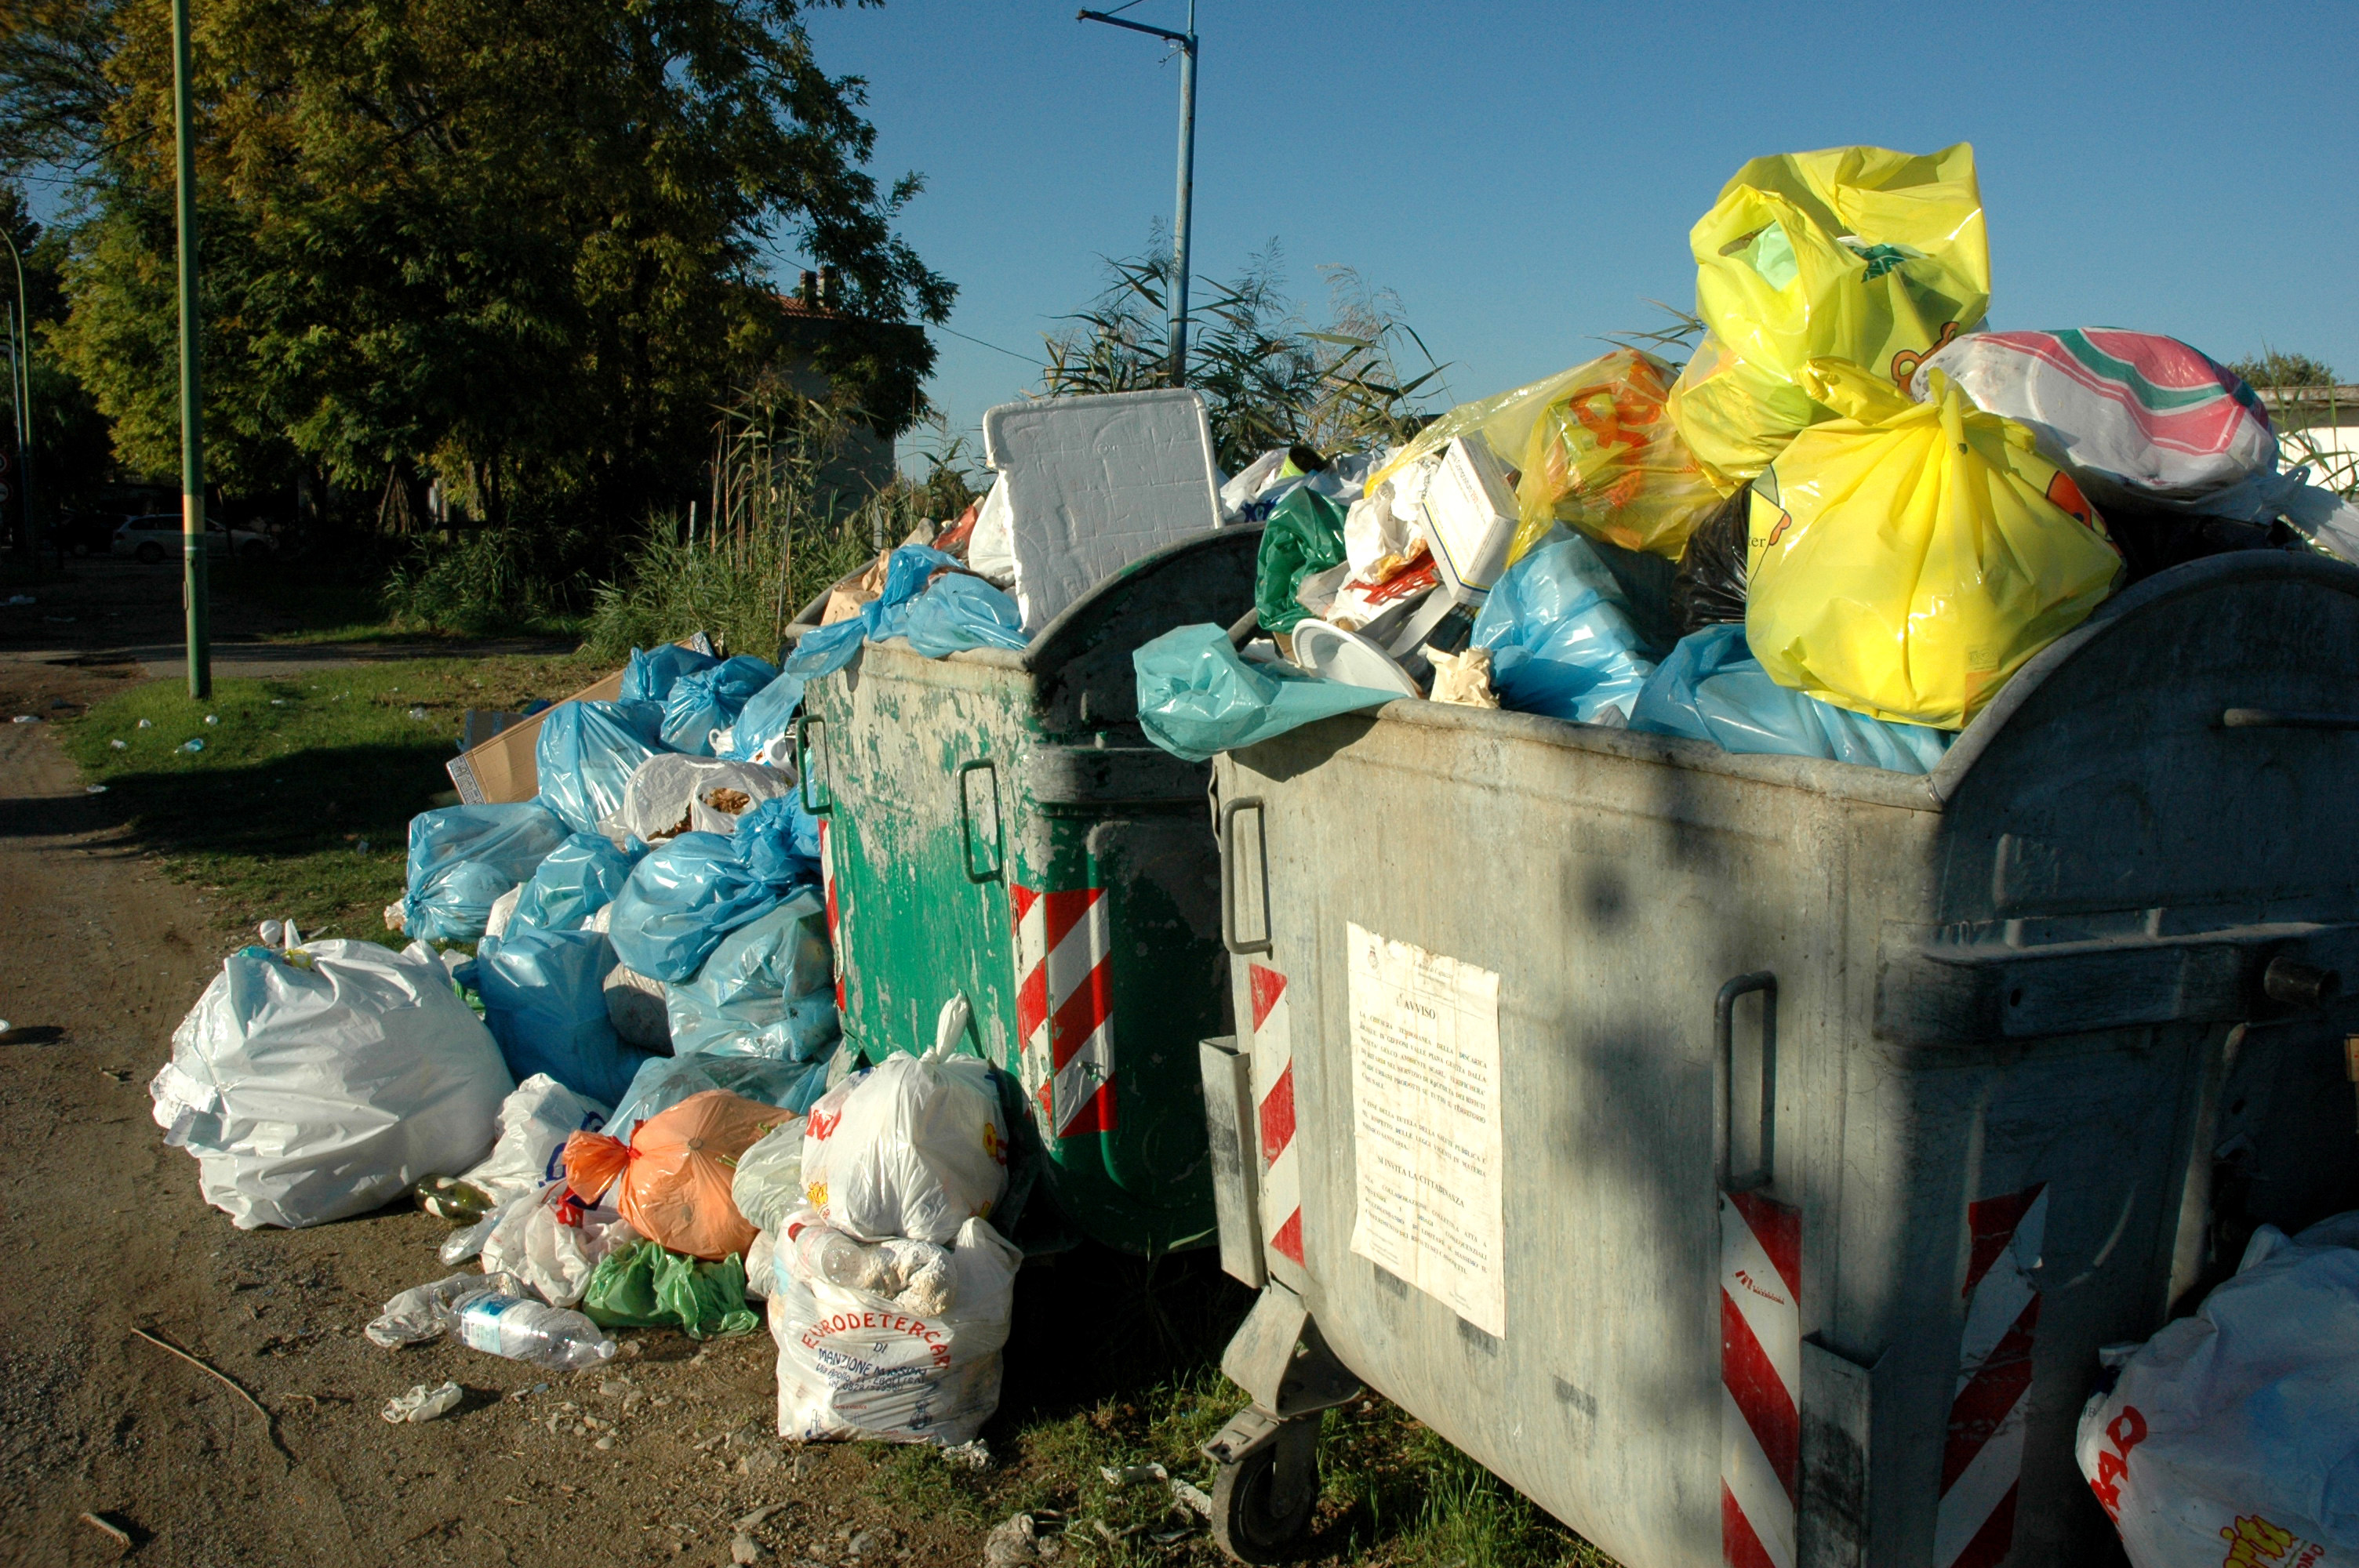 Überfüllte Müllcontainer / ©  Paul-Georg Meister / pixelio.de